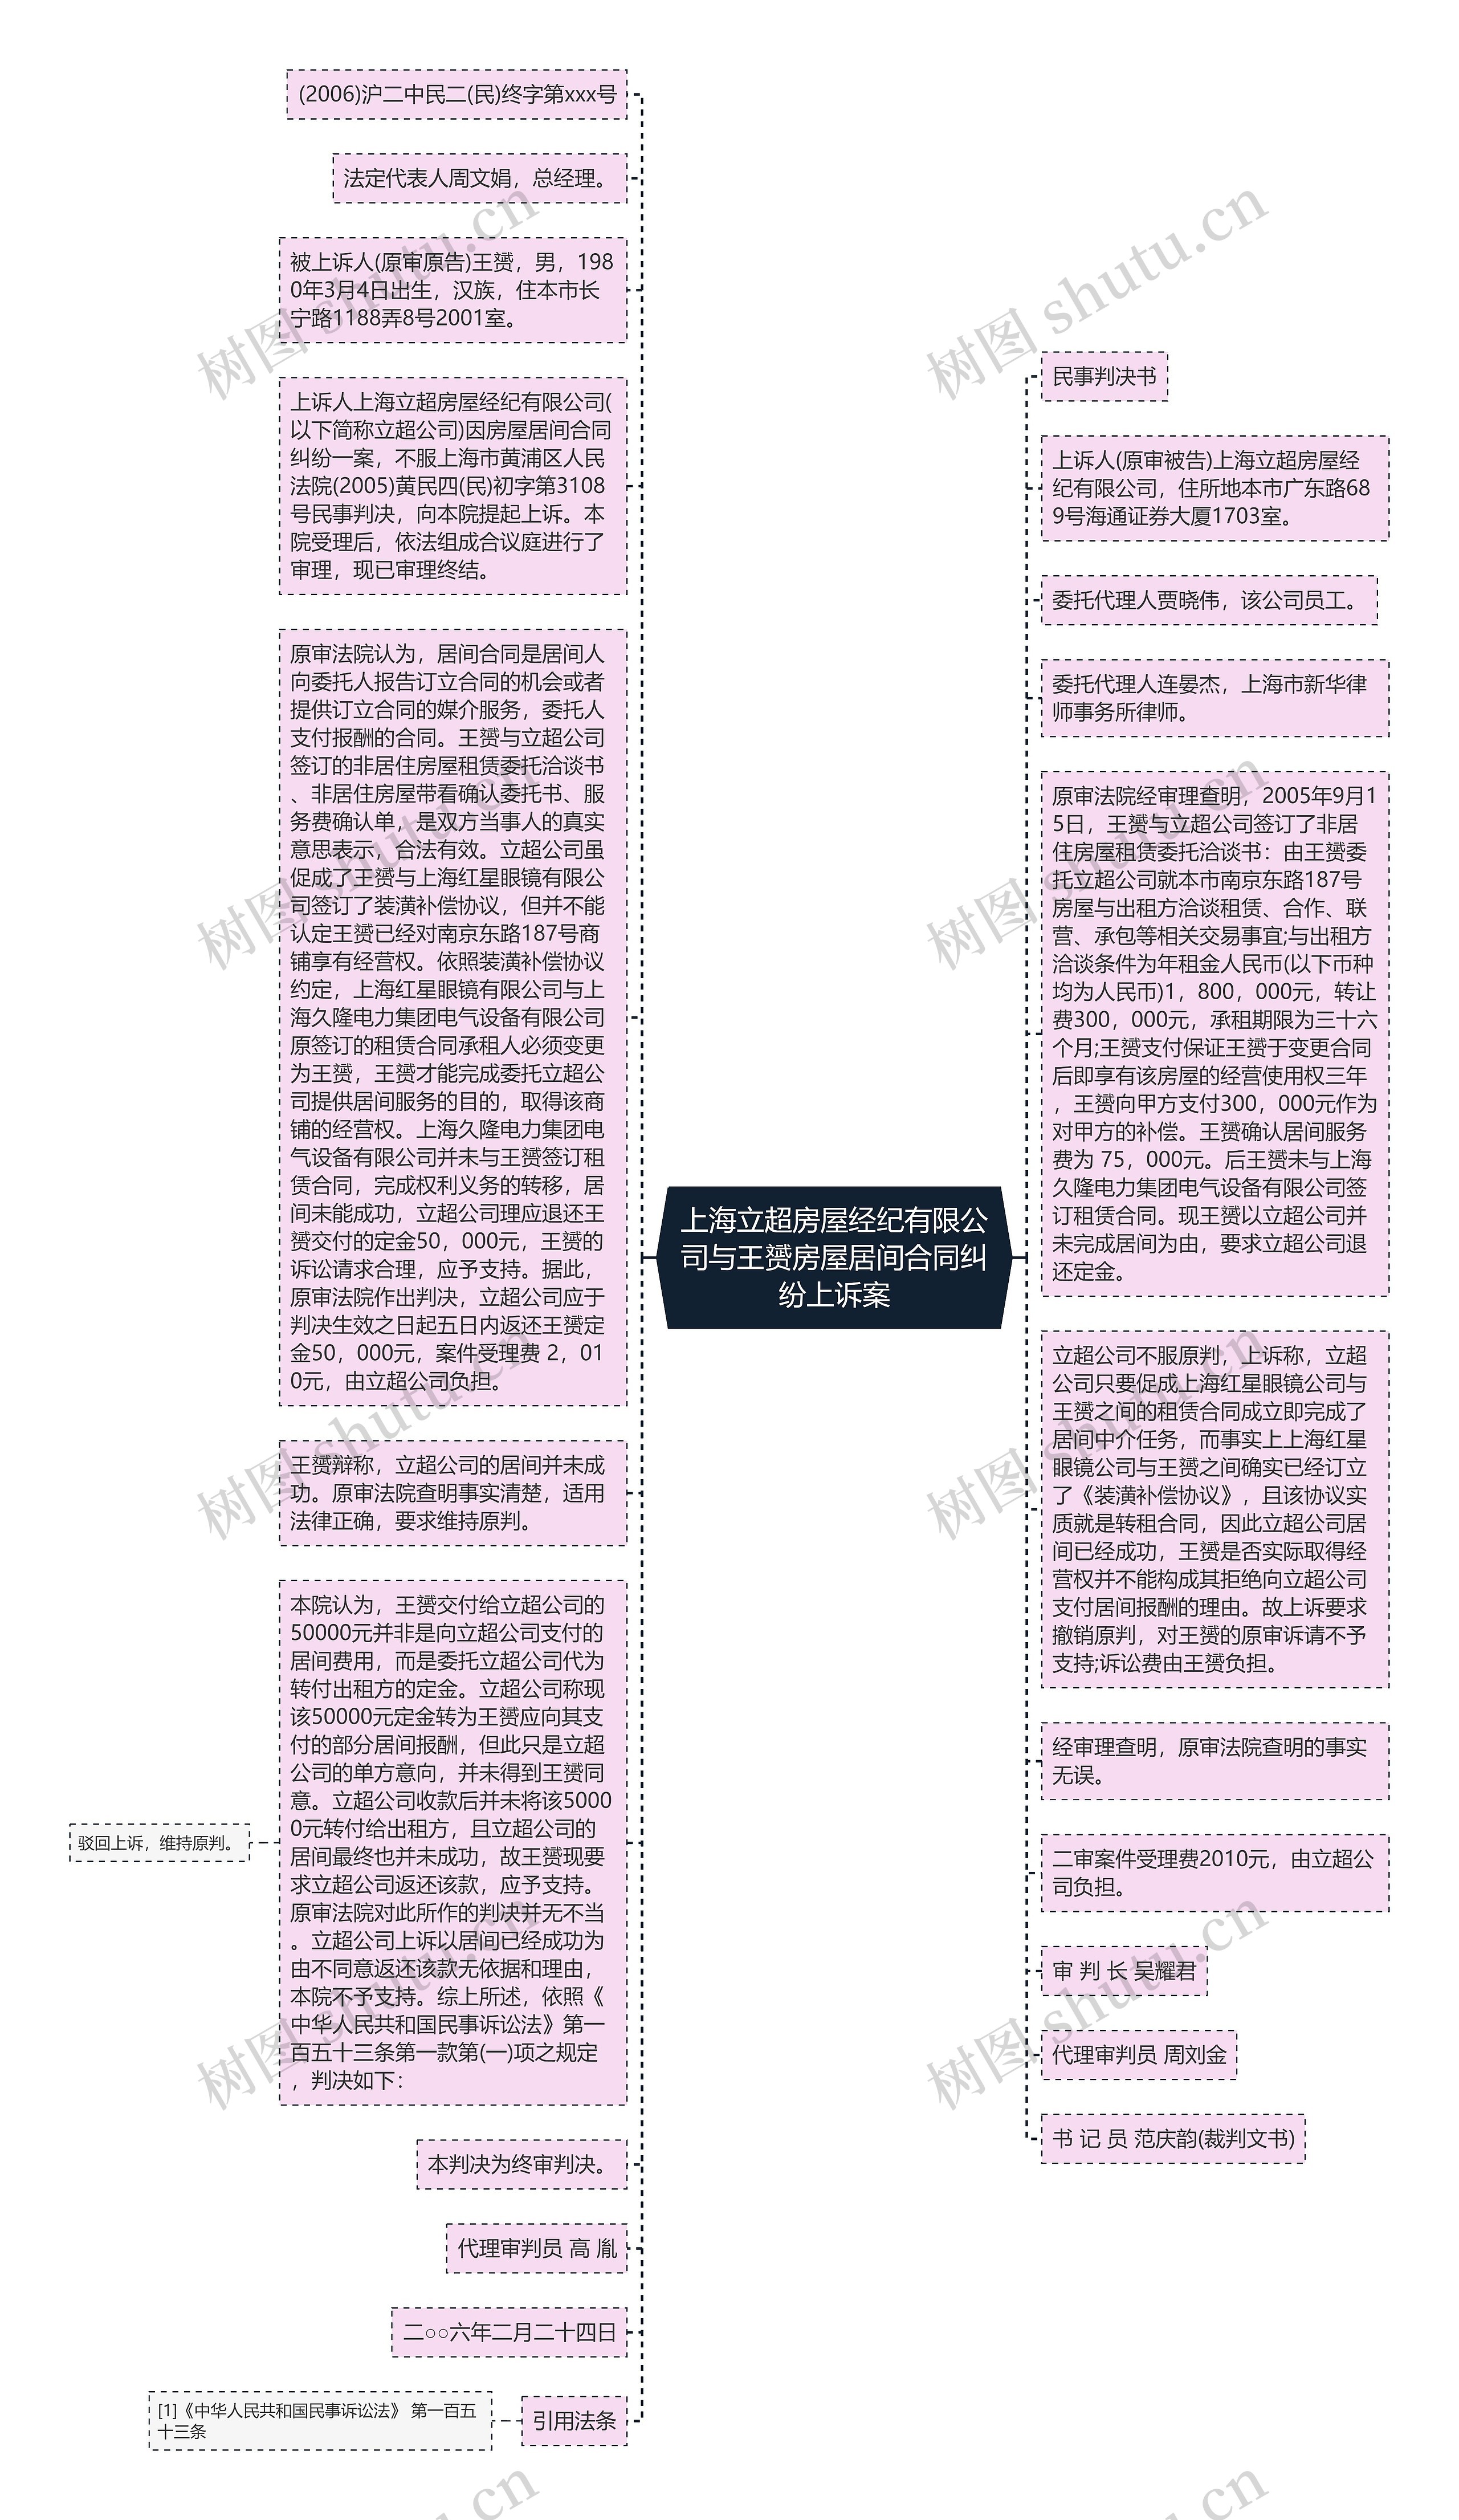 上海立超房屋经纪有限公司与王赟房屋居间合同纠纷上诉案